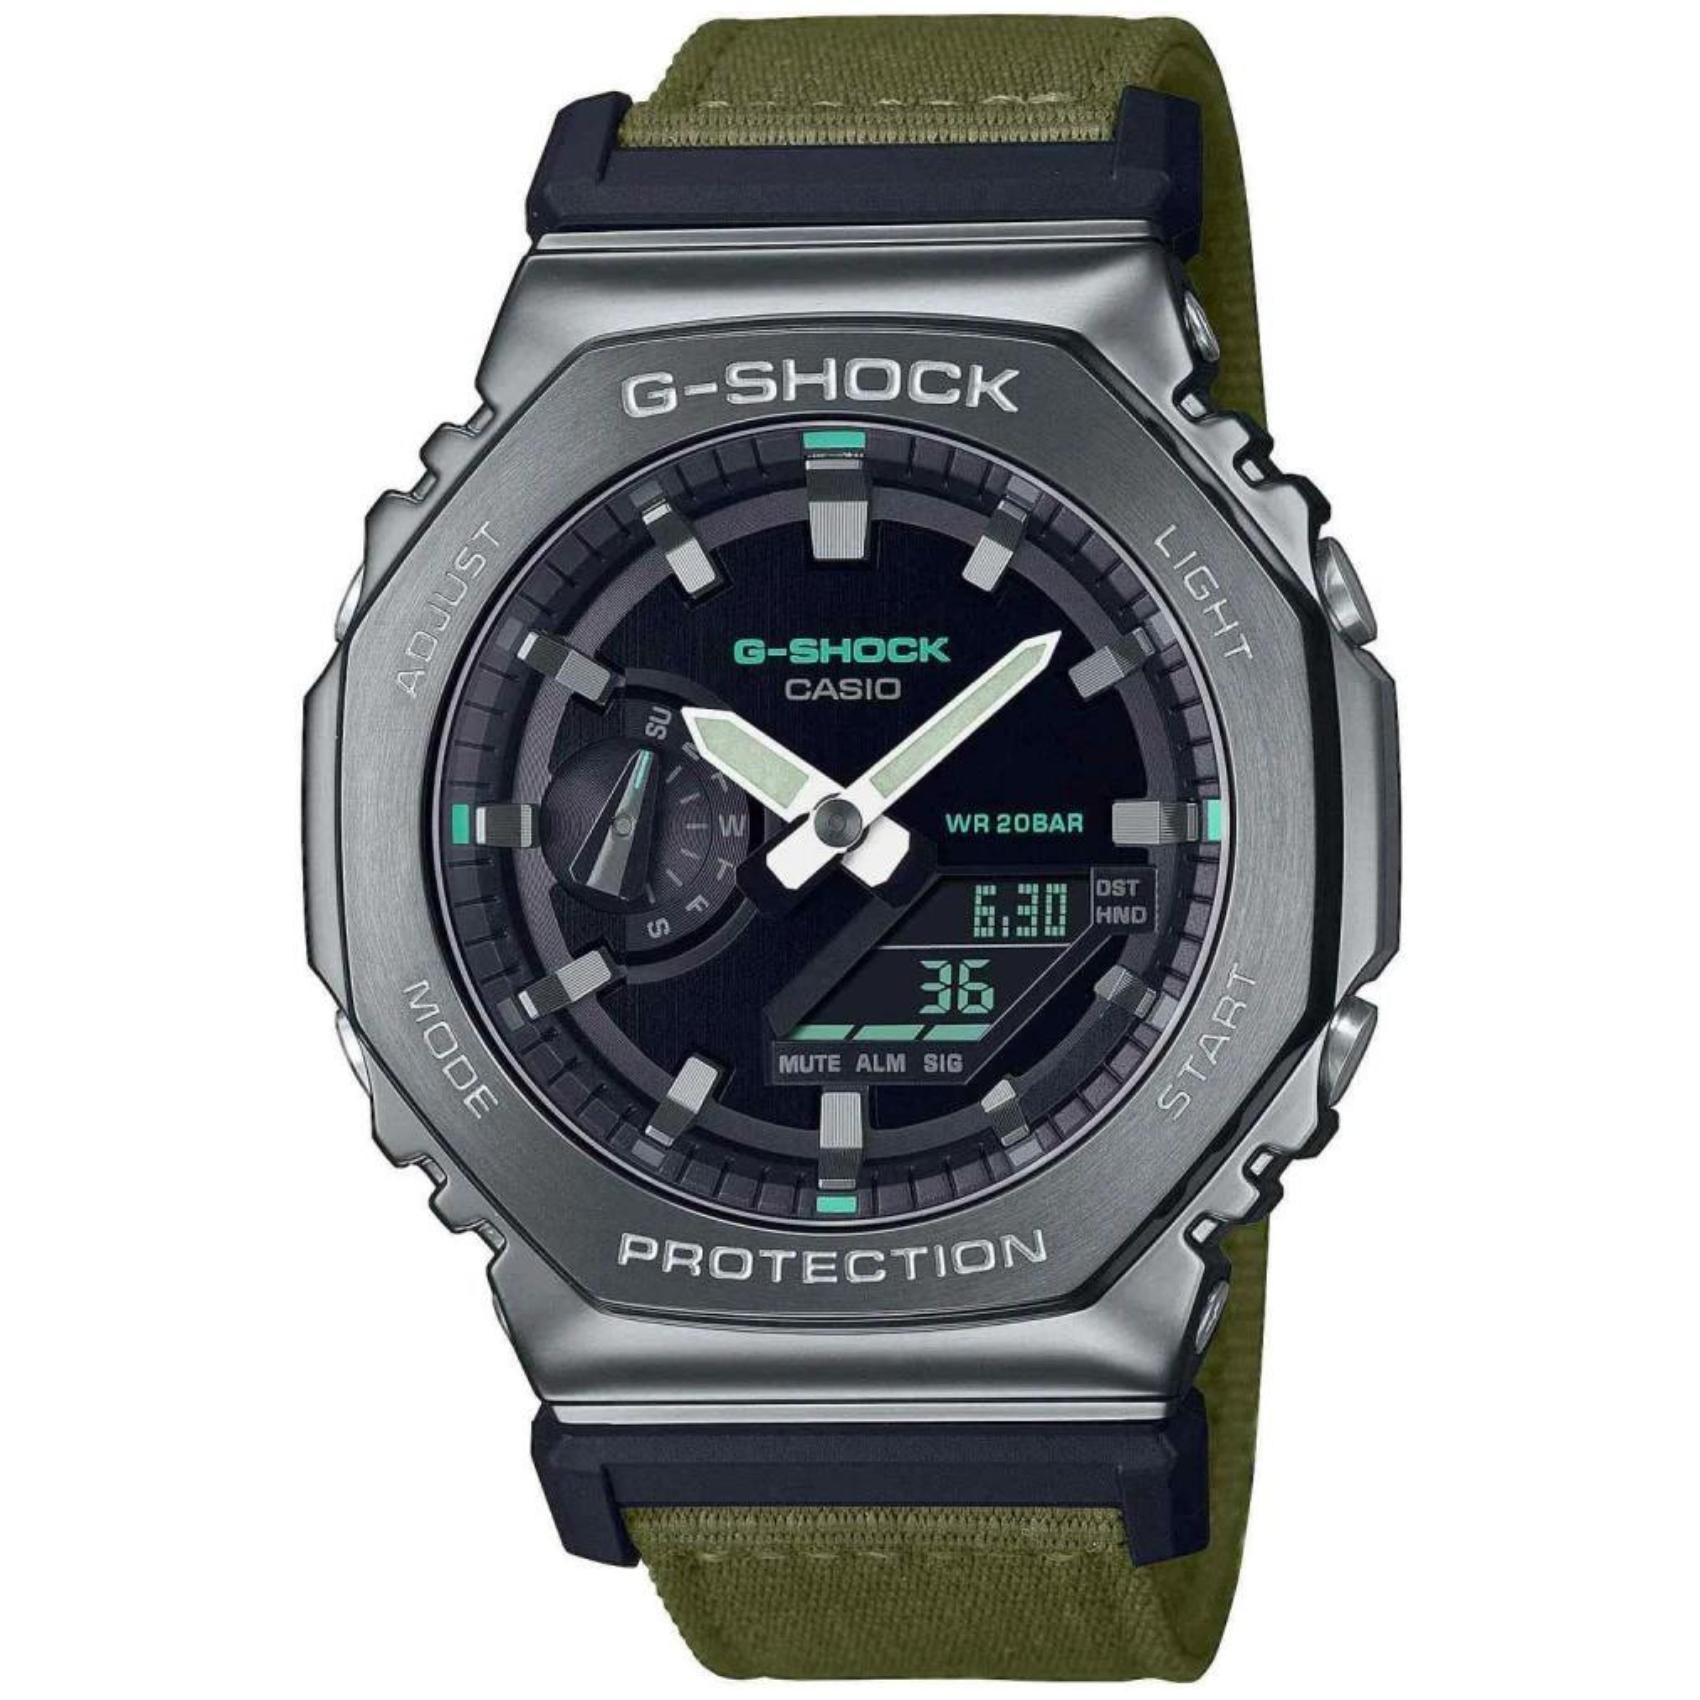 Ρολόι χρονογράφος Casio G-Shock GM-2100CB-3AER με χακί υφασμάτινο λουράκι, μαύρο καντράν μεγέθους 44.4mm anadigi κατάλληλο για καταδύσεις.